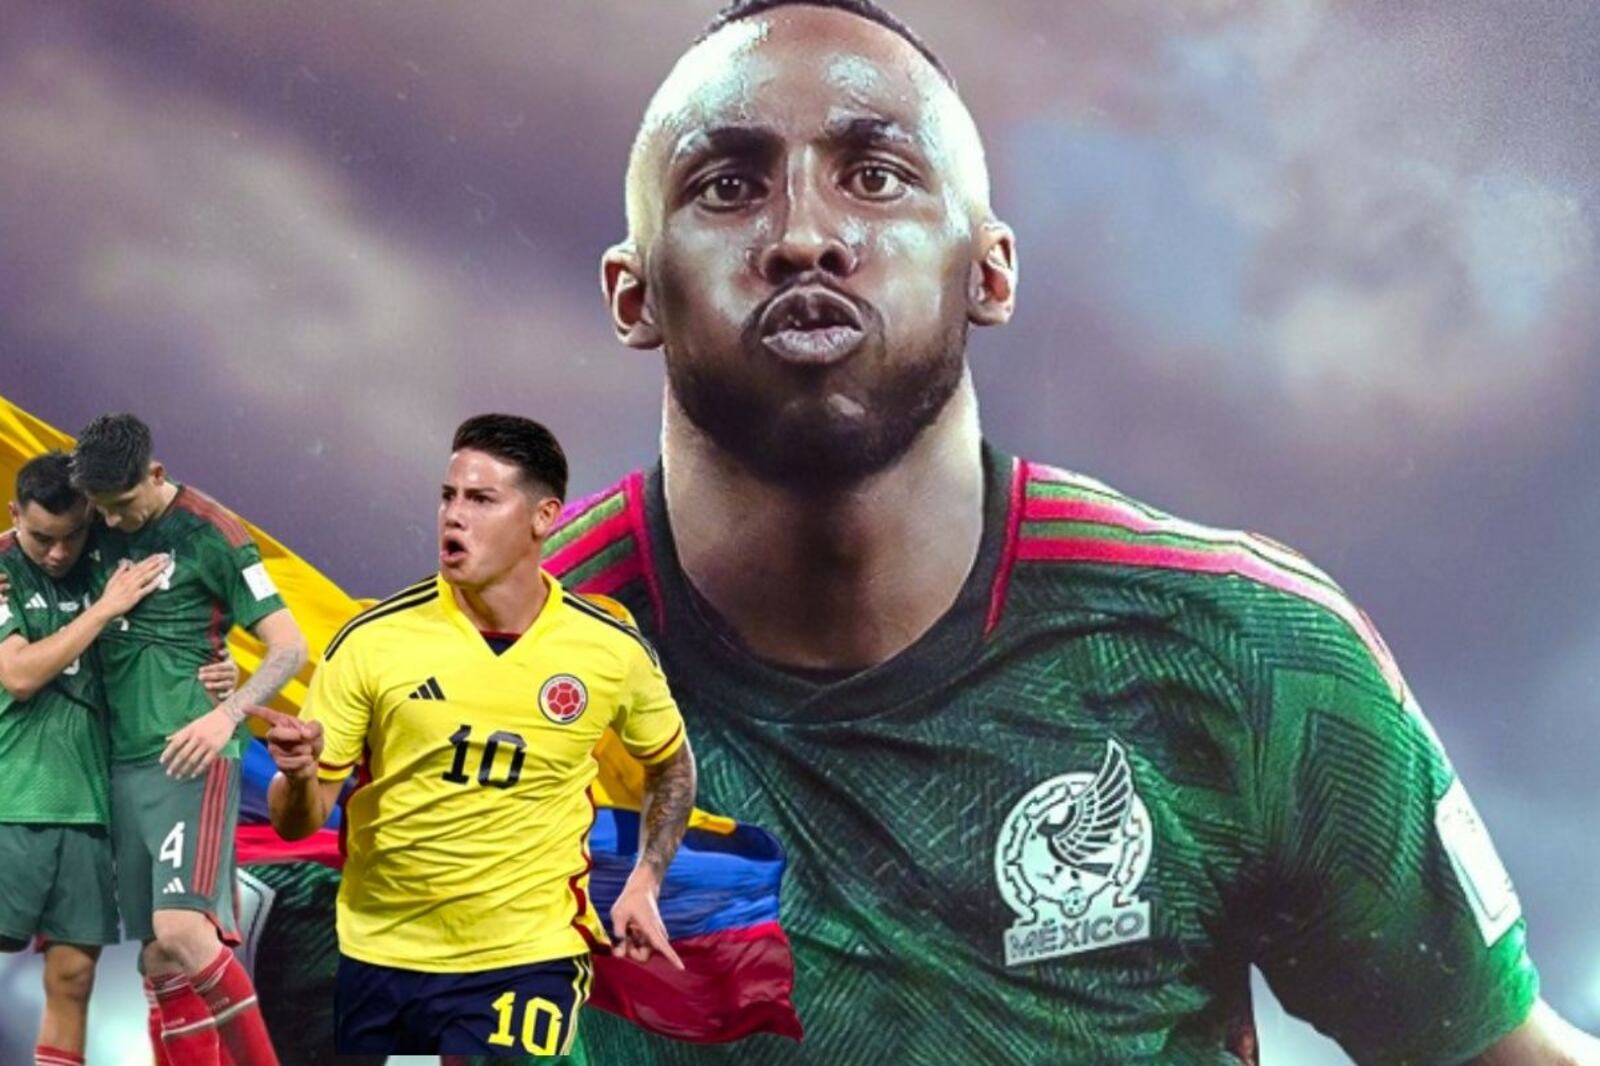 Mientras Quiñones llegaría al Tri, el crack mexicano que jugaría por Colombia